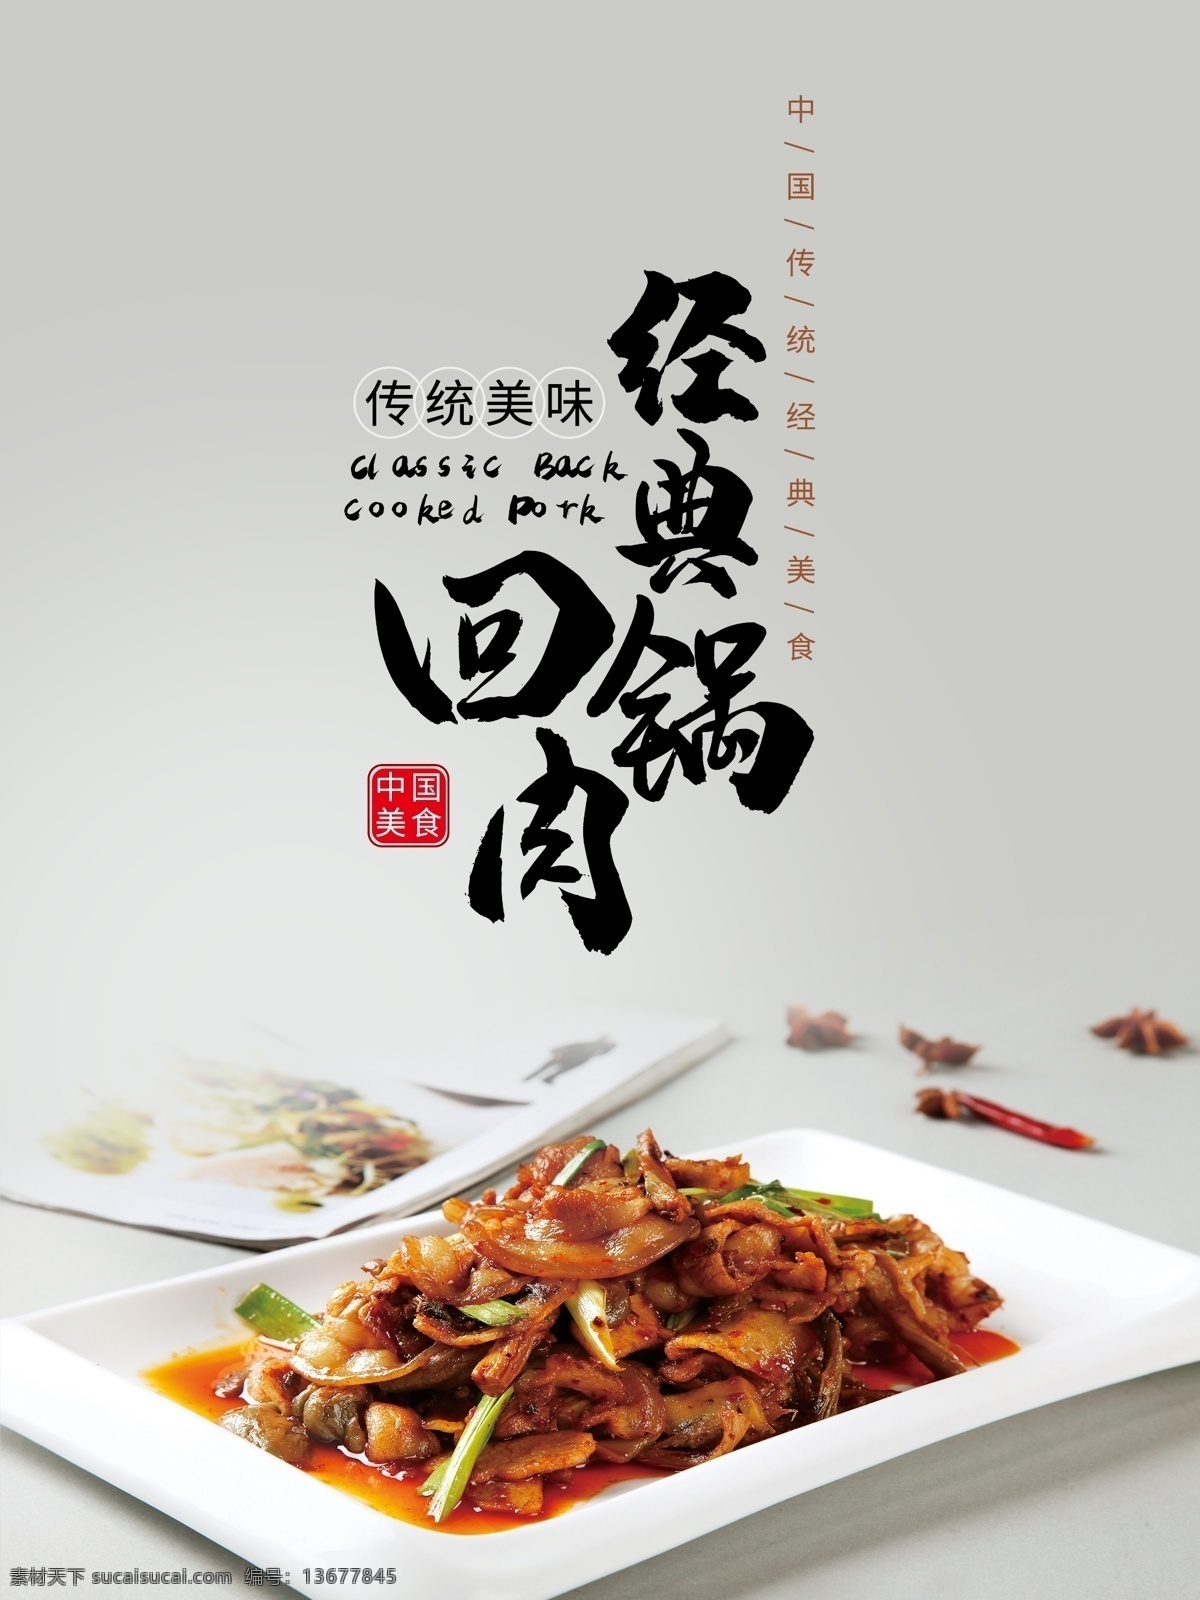 经典 回锅肉 宣传海报 中国美食 传统美味 经典回锅肉 经典美食 美食海报 美食